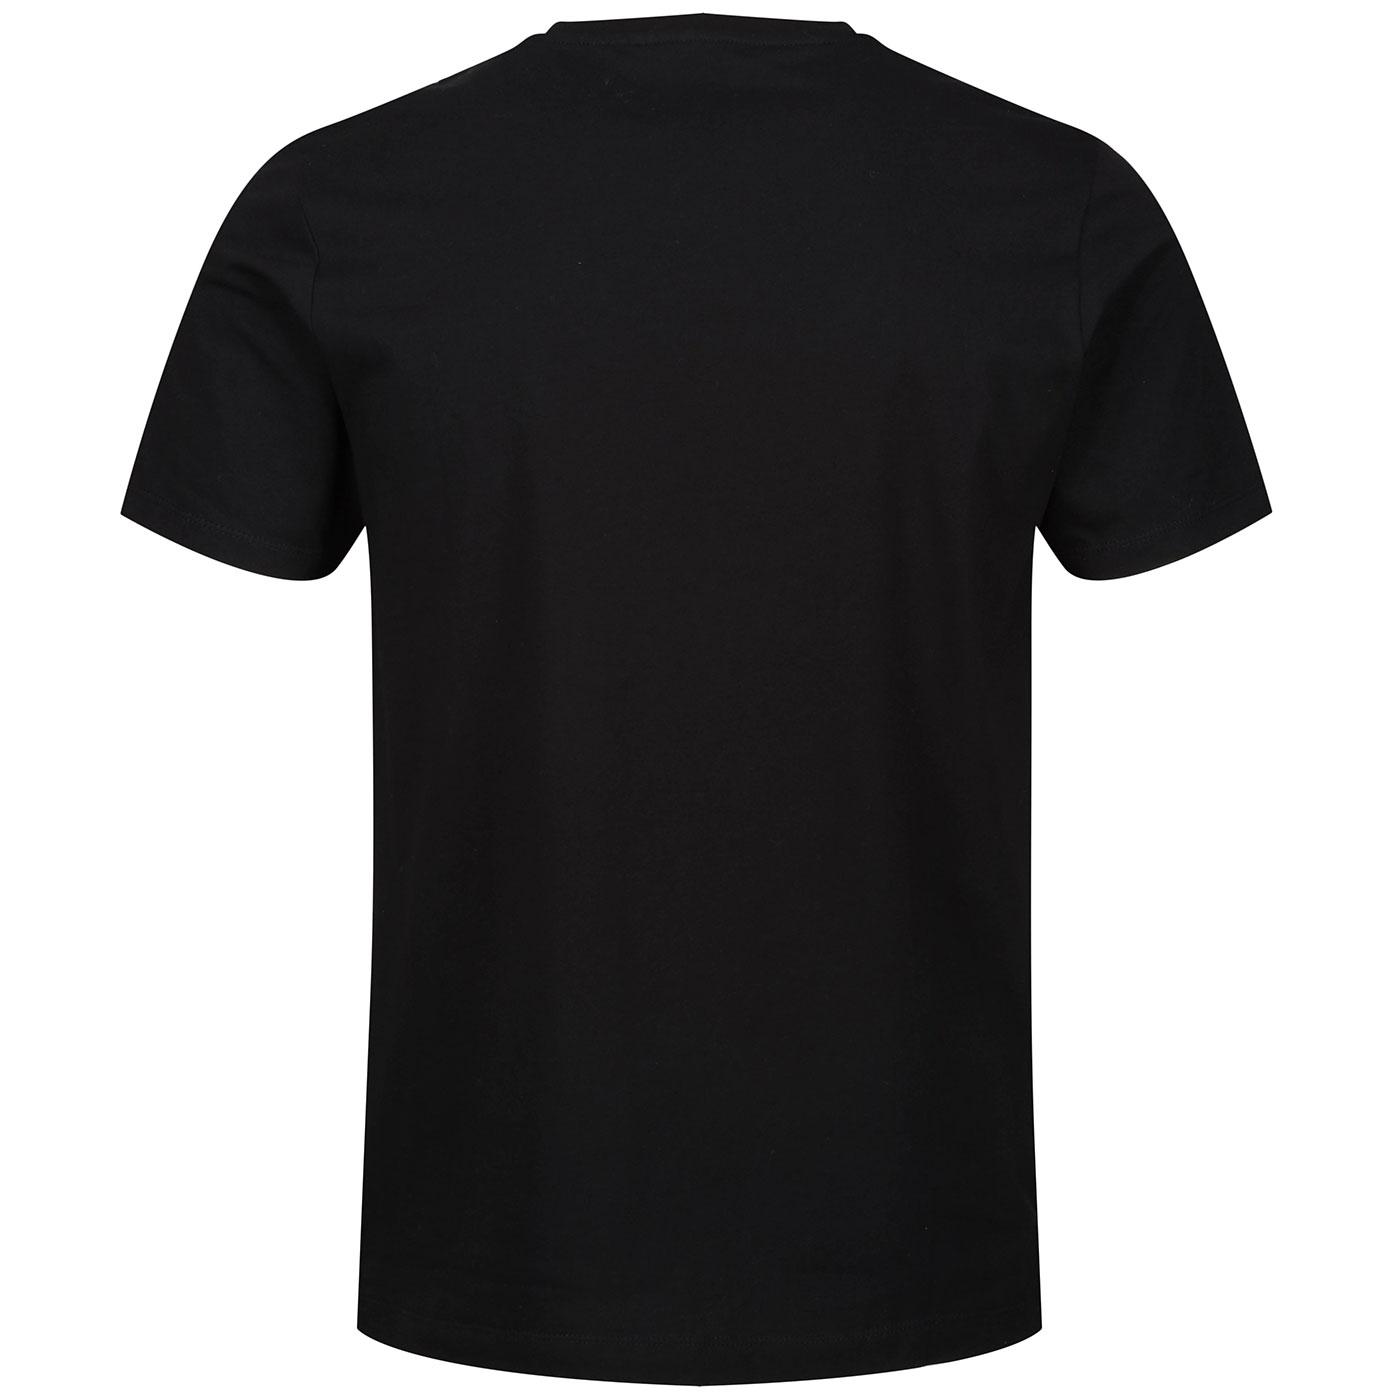 Luke Sport Retro Lions Den Overprint Panel T-shirt in Black Gold